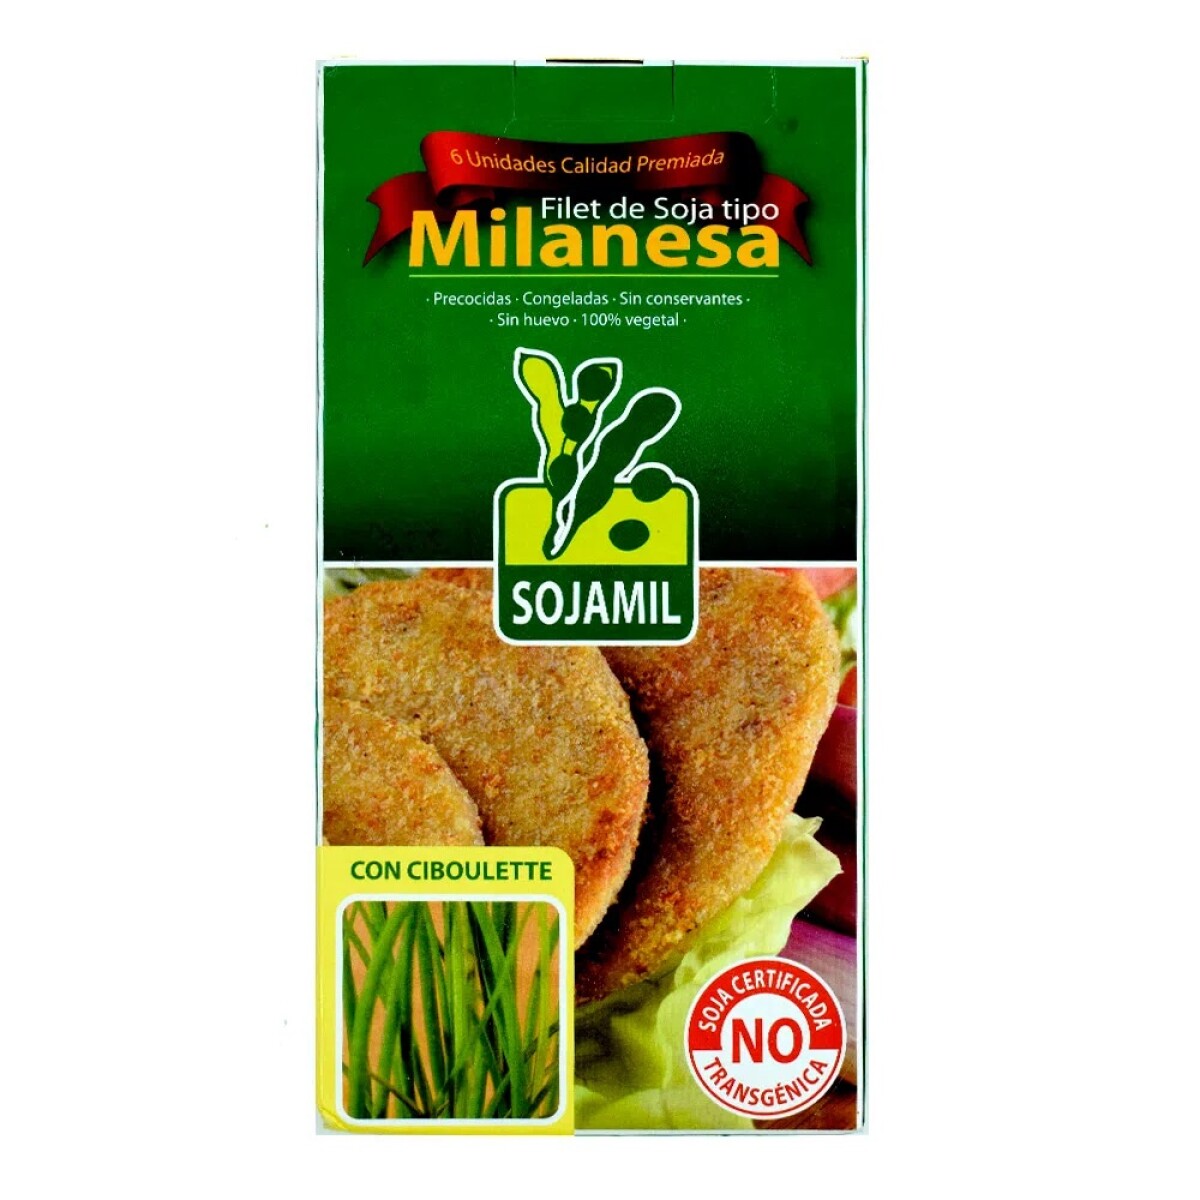 Milanesa de soja sabor ciboulette Sojamil - 6 uds. 